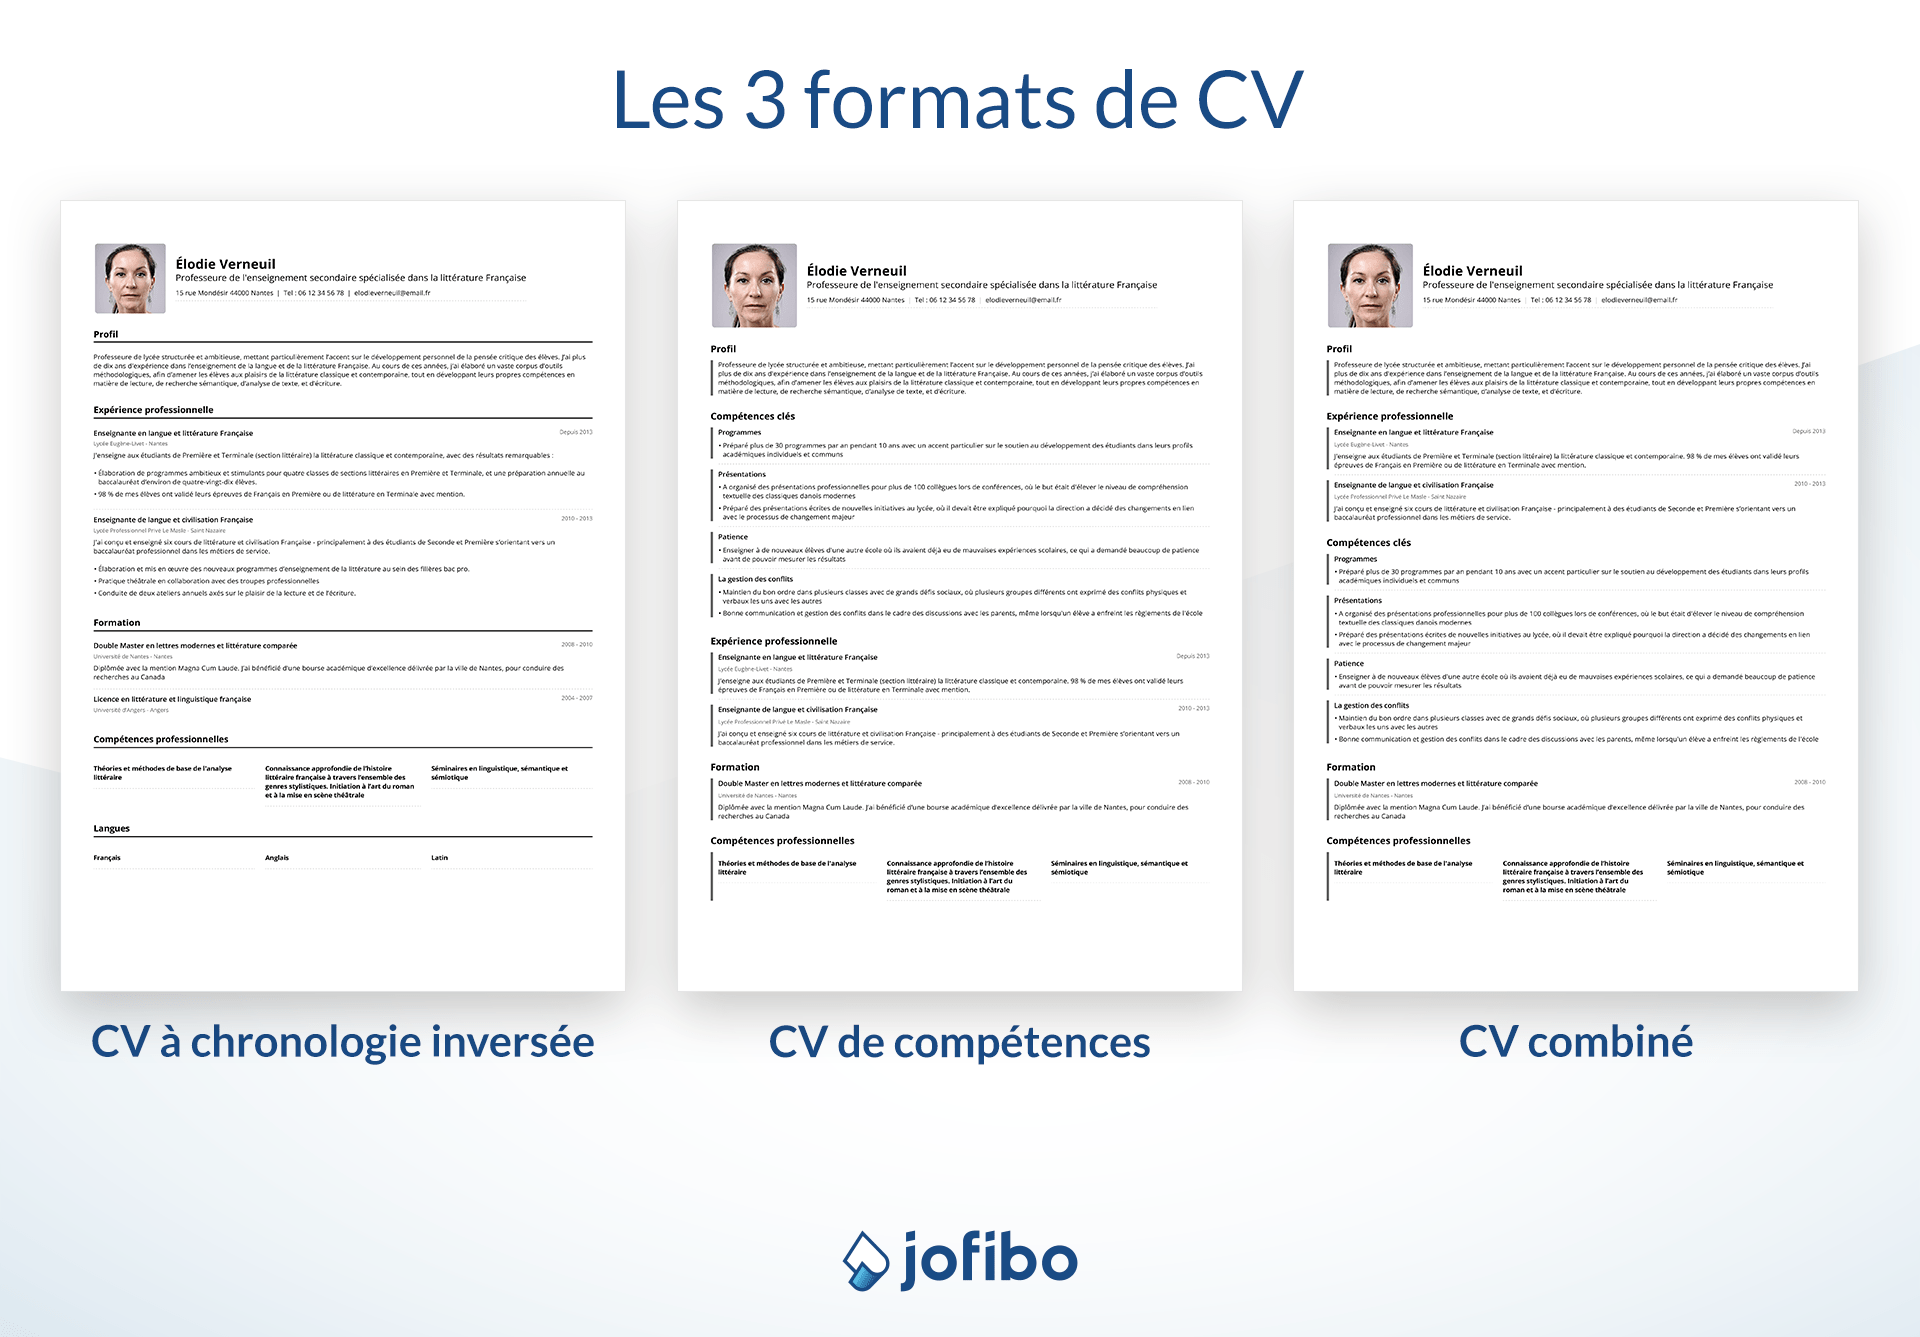 Illustration des 3 formats de CV Format CV chronologique inversé, format CV axé sur les compétences et format de CV combiné avec exemples de CV